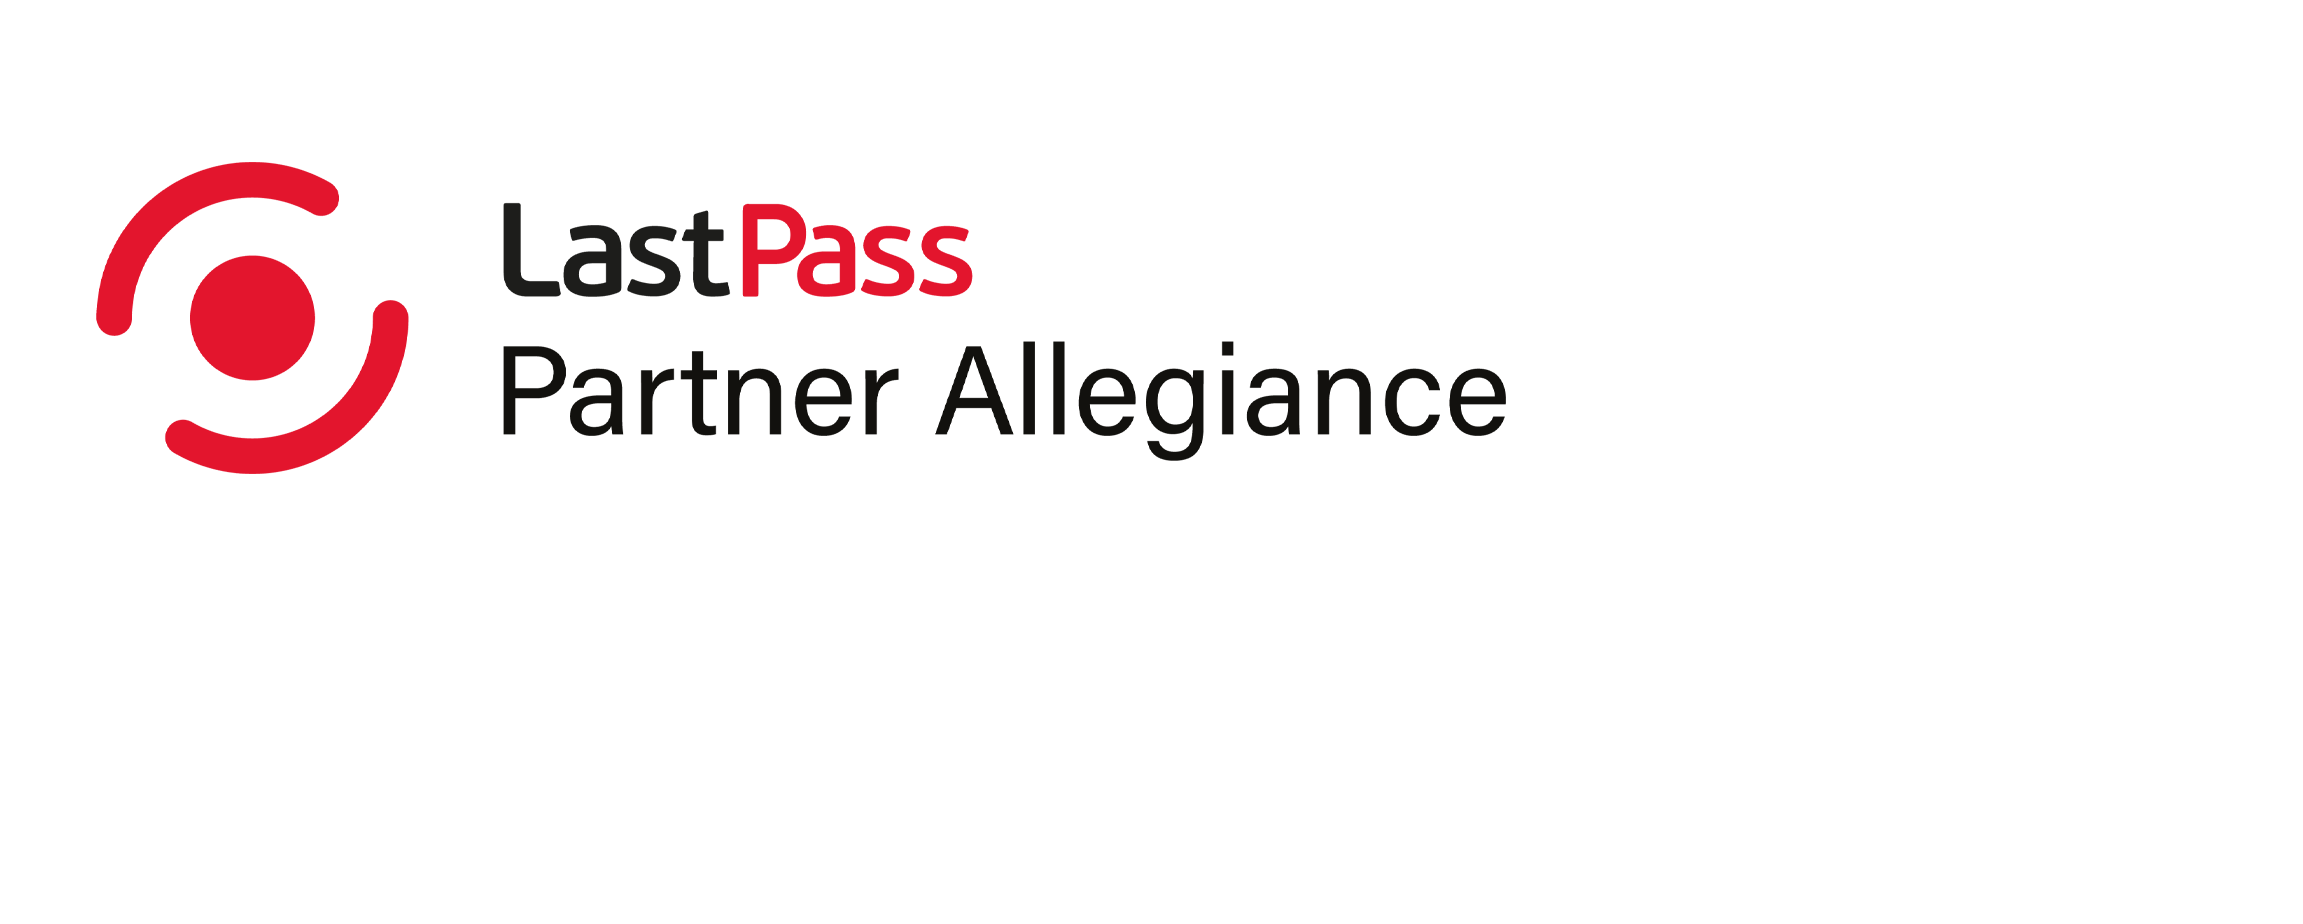 LastPass Allegiance Partner Program logo